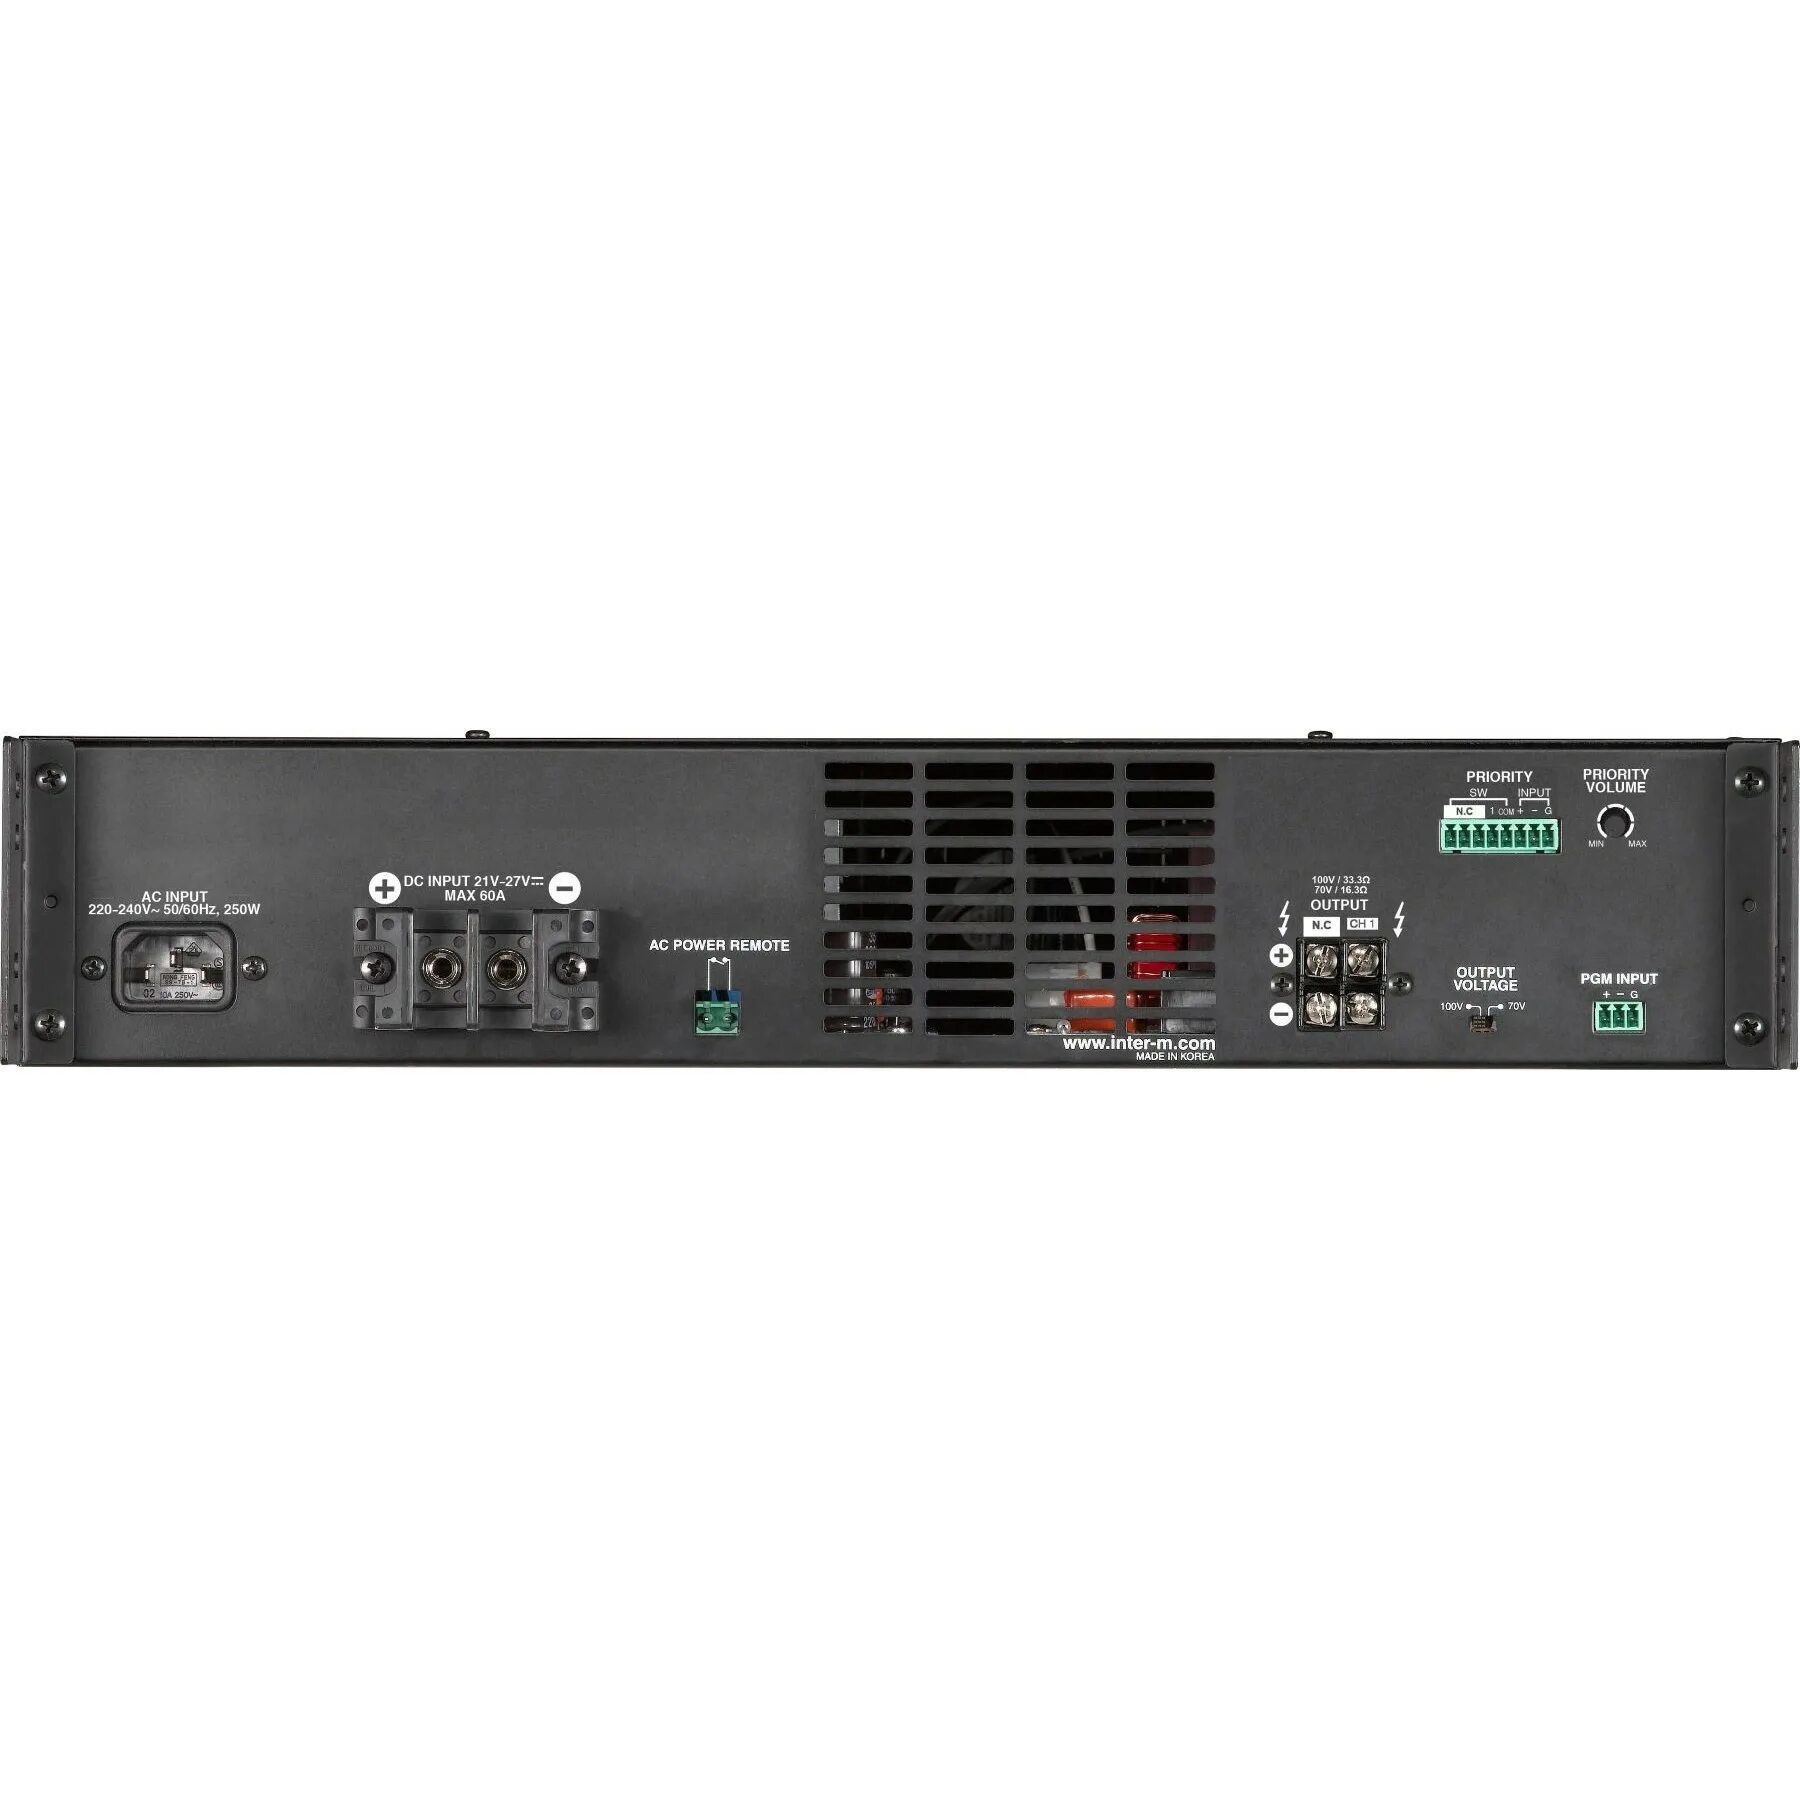 Усилитель inter m. Inter-m dpa-1200s. Dpa-900s цифровой трансляционный усилитель мощности, 1х900 Вт. Усилитель Inter-m dpa 900. Inter-m dpa-600s.